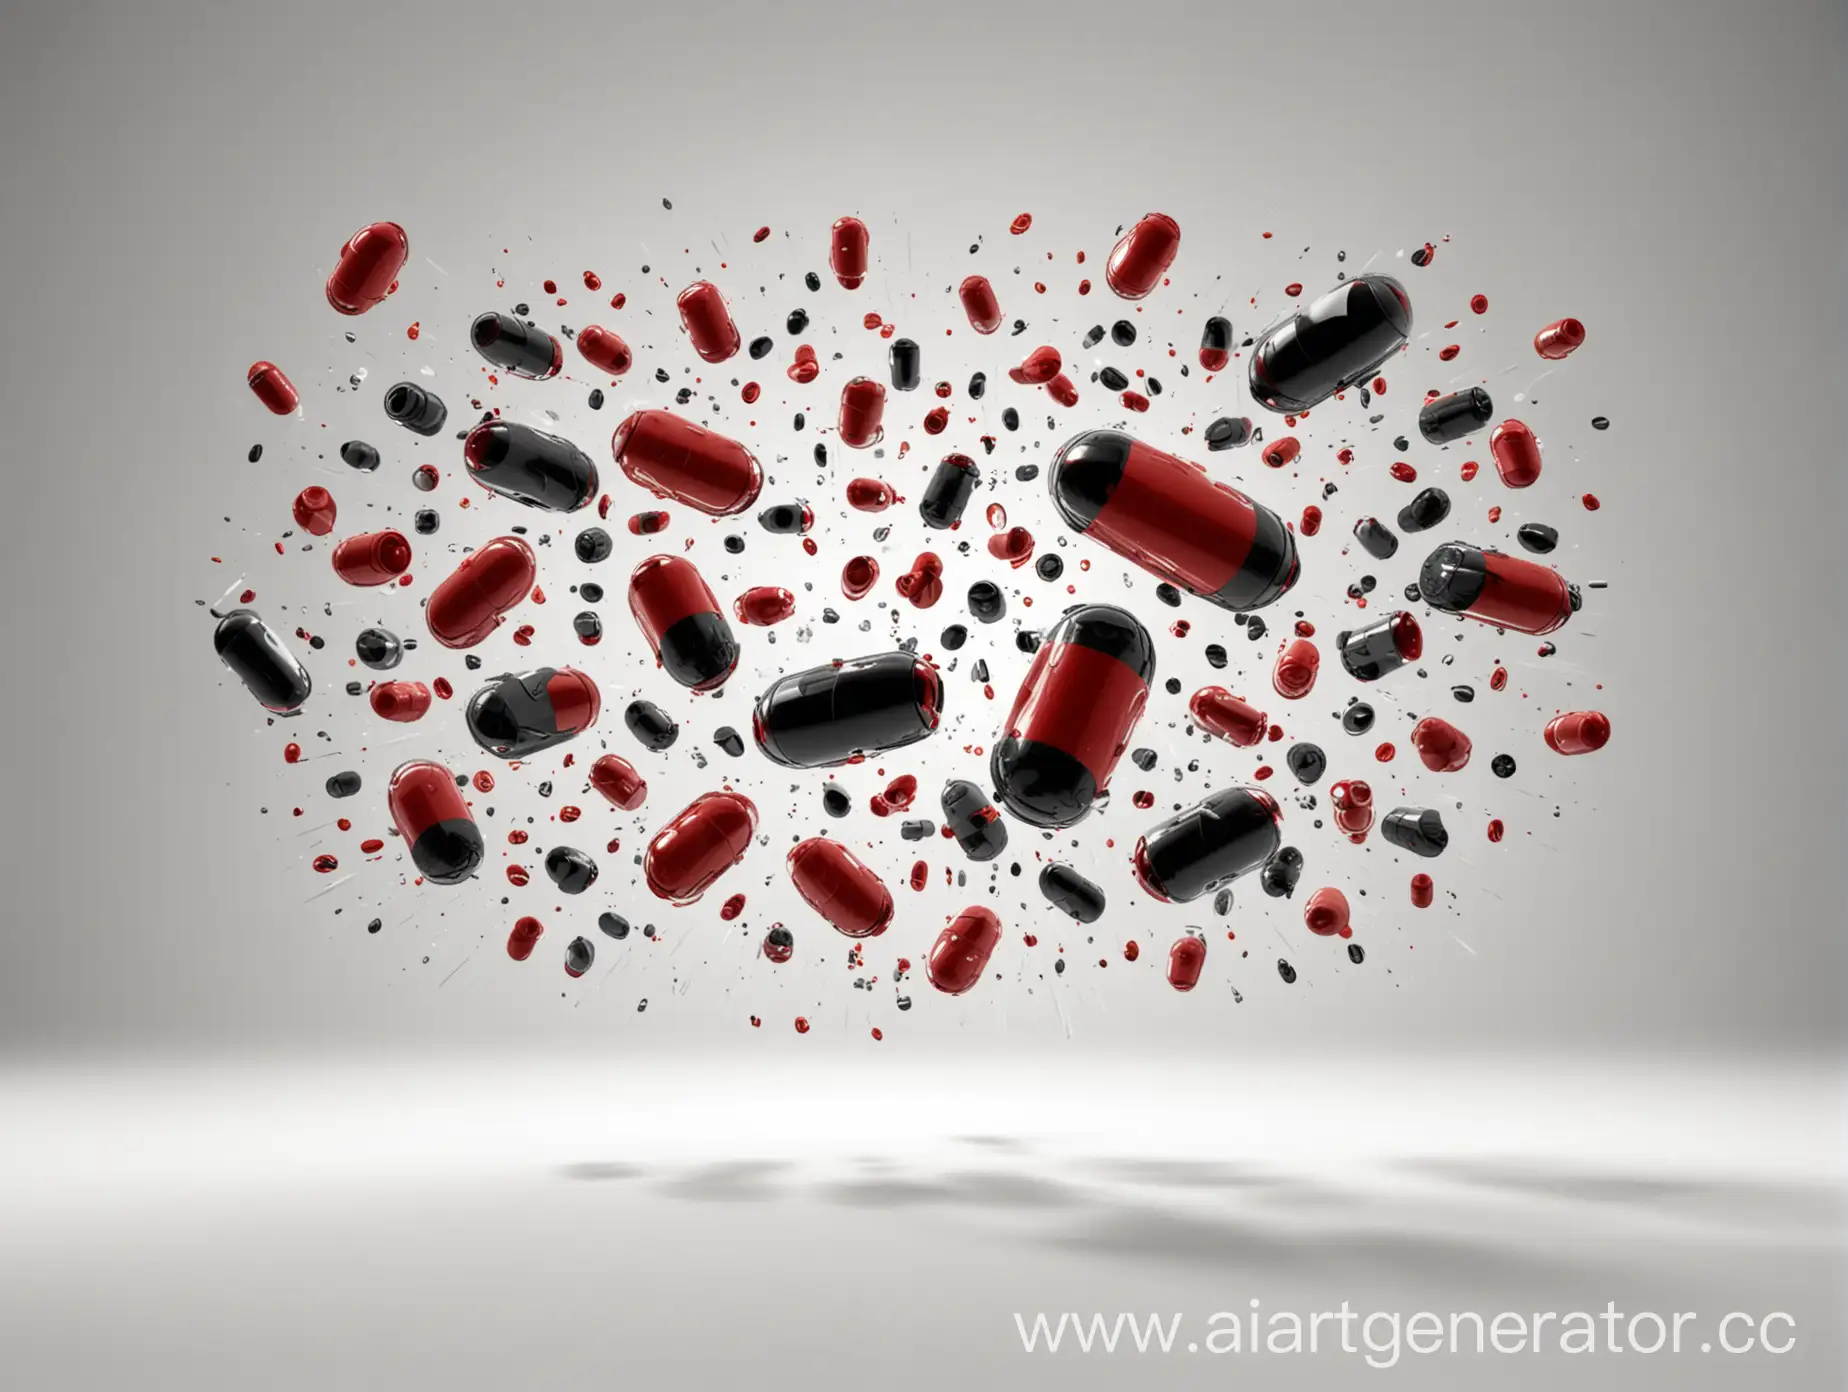 красные и черные таблетки и капсулы летят навстречу друг другу на белом фоне с тенями